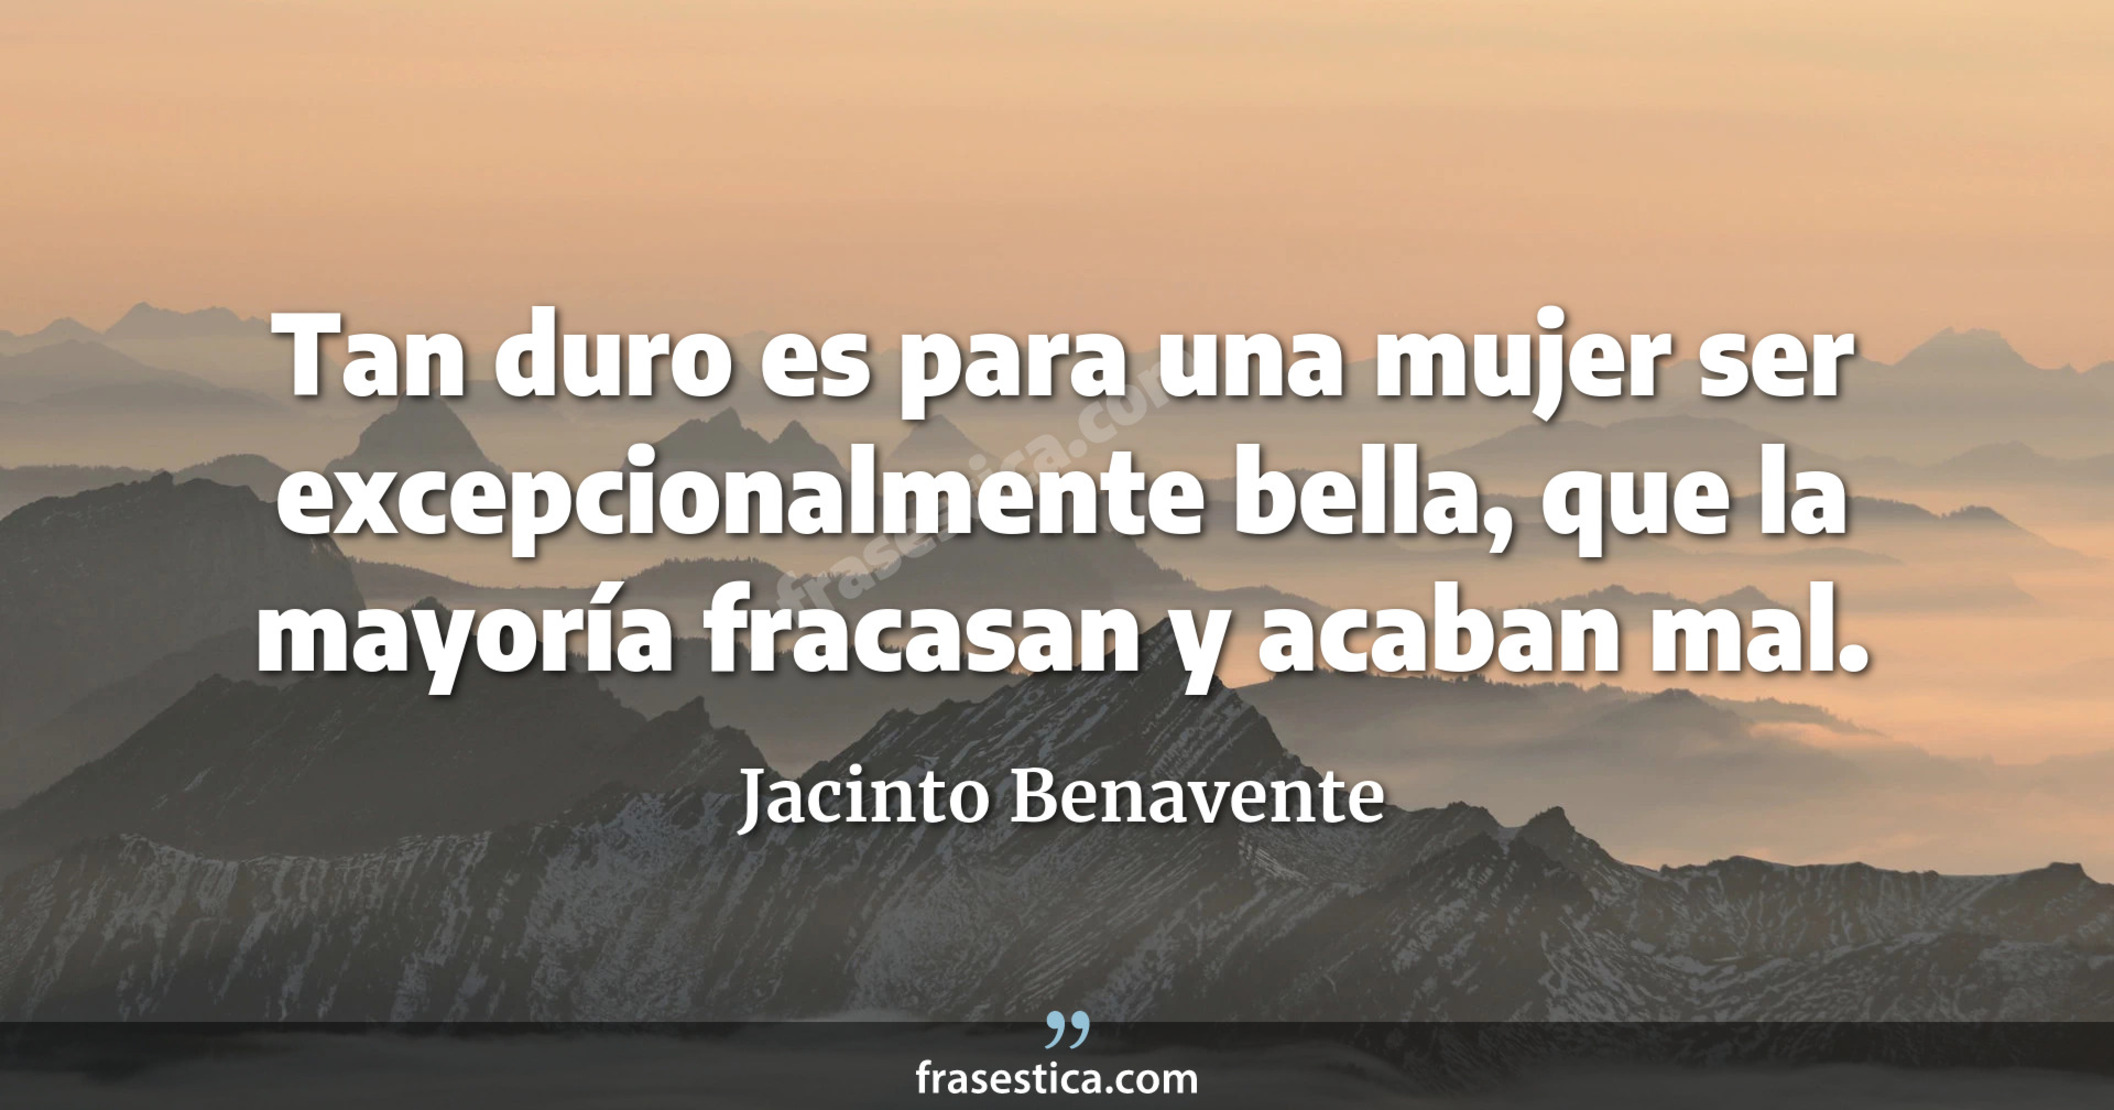 Tan duro es para una mujer ser excepcionalmente bella, que la mayoría fracasan y acaban mal. - Jacinto Benavente